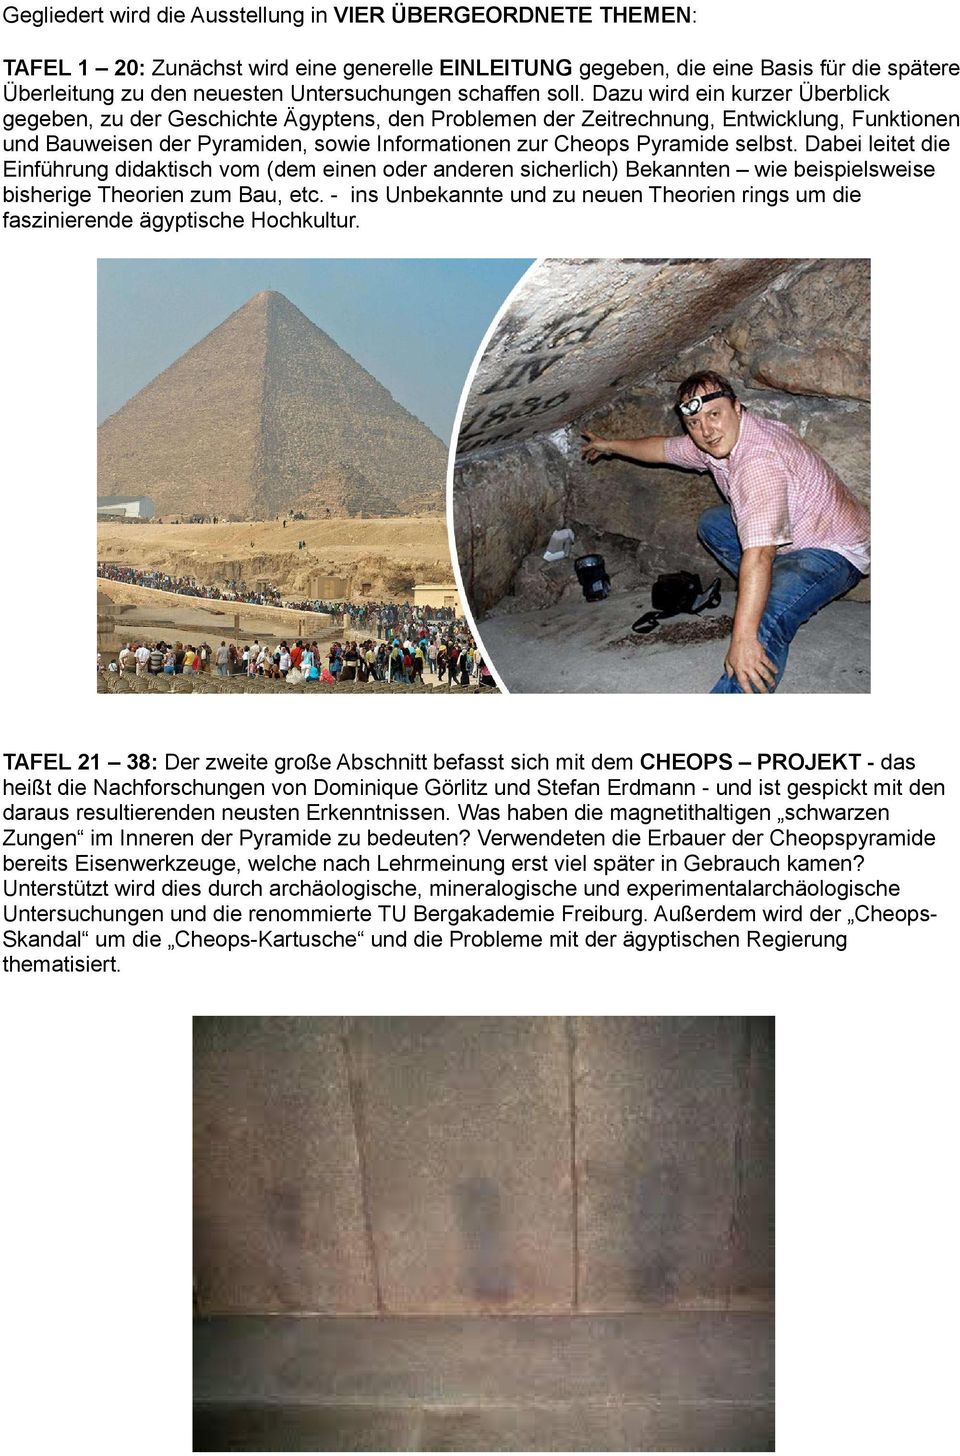 Dazu wird ein kurzer Überblick gegeben, zu der Geschichte Ägyptens, den Problemen der Zeitrechnung, Entwicklung, Funktionen und Bauweisen der Pyramiden, sowie Informationen zur Cheops Pyramide selbst.